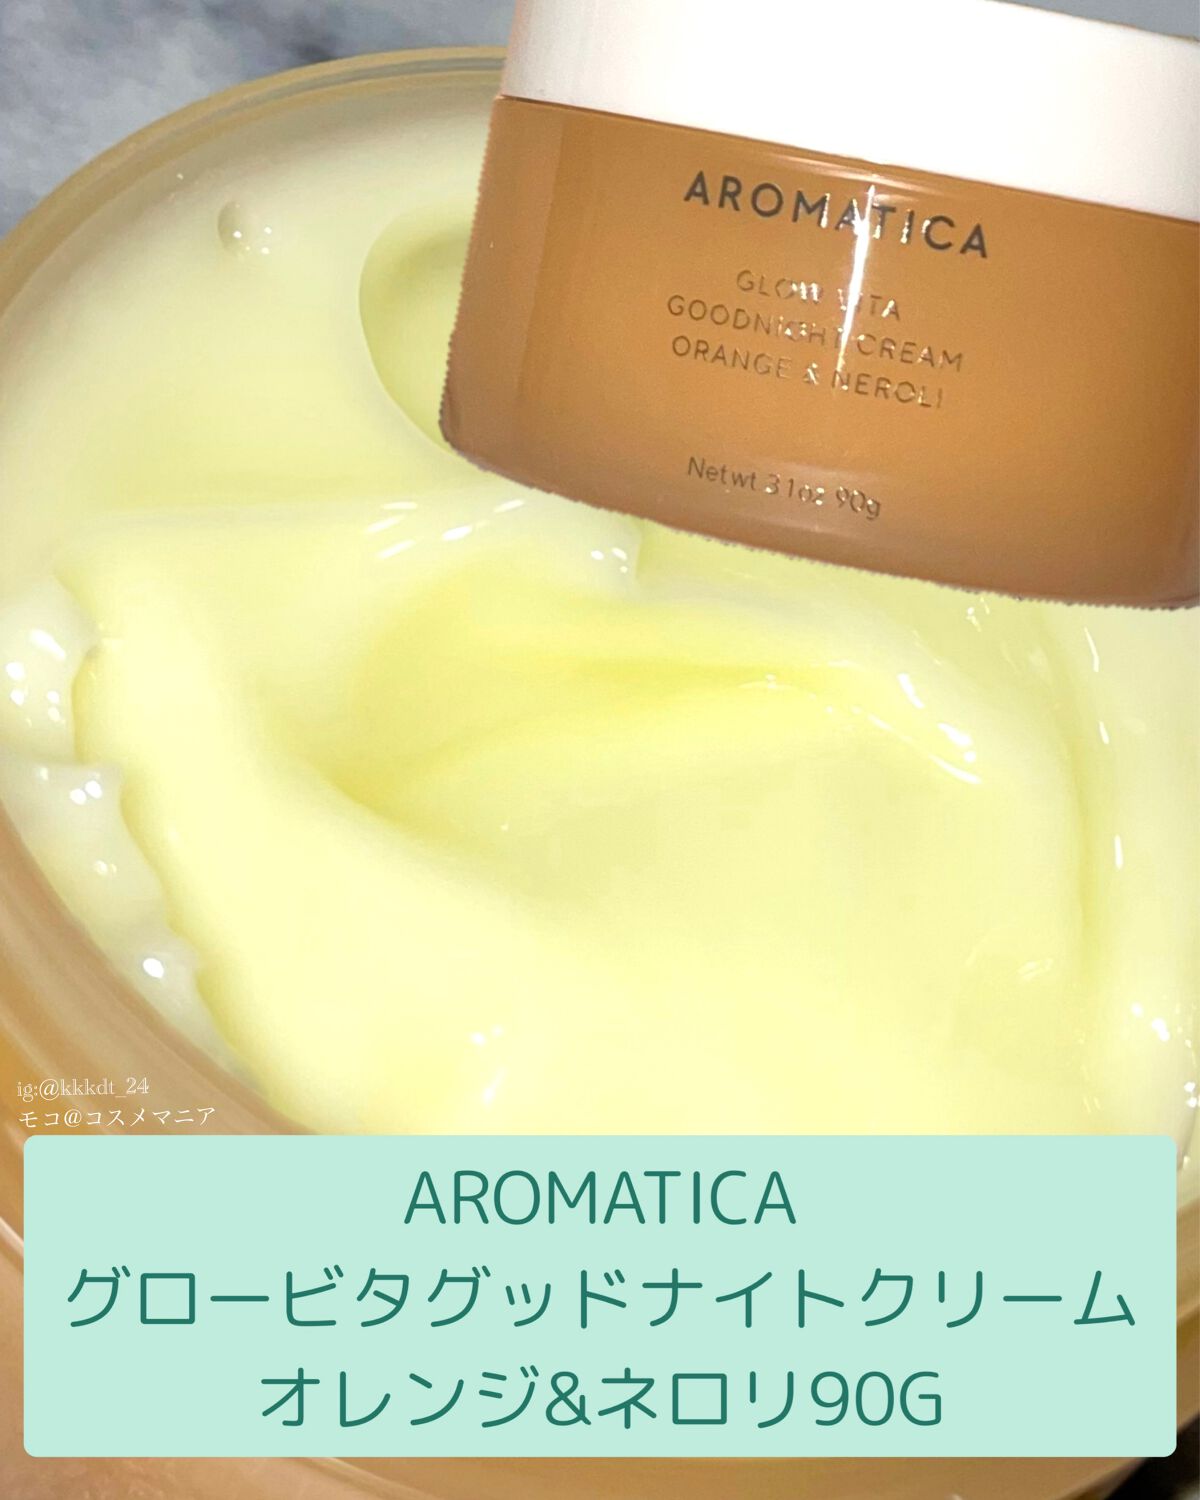 AROMATICA グロービタ グッドナイトクリーム90g　オレンジネロリ